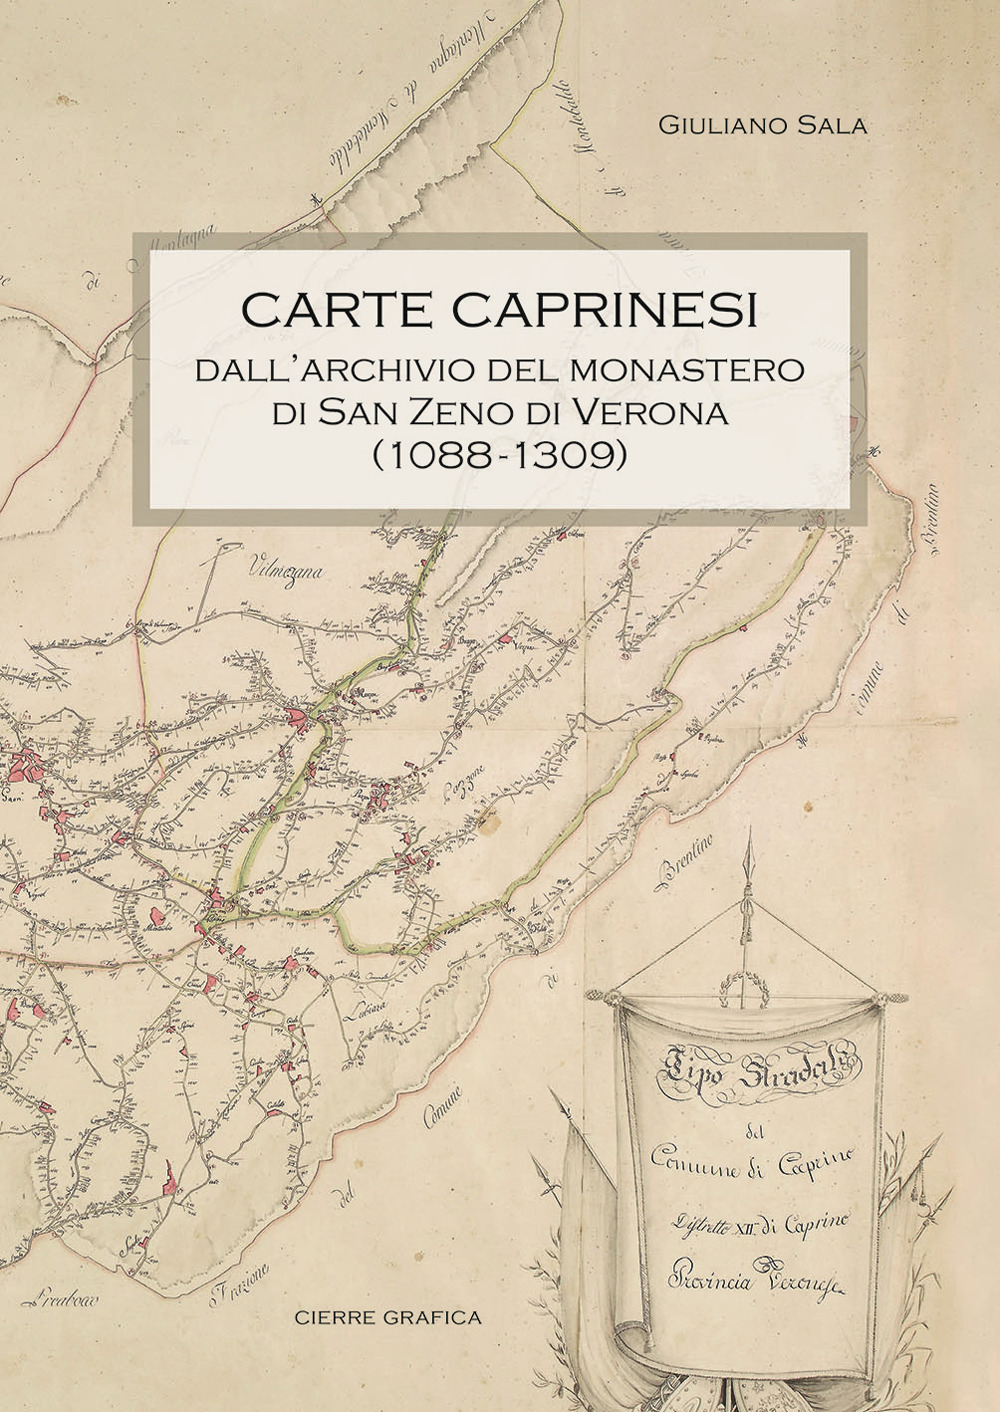 Carte caprinesi. Dall'archivio del monastero di San Zeno di Verona (1088-1309)